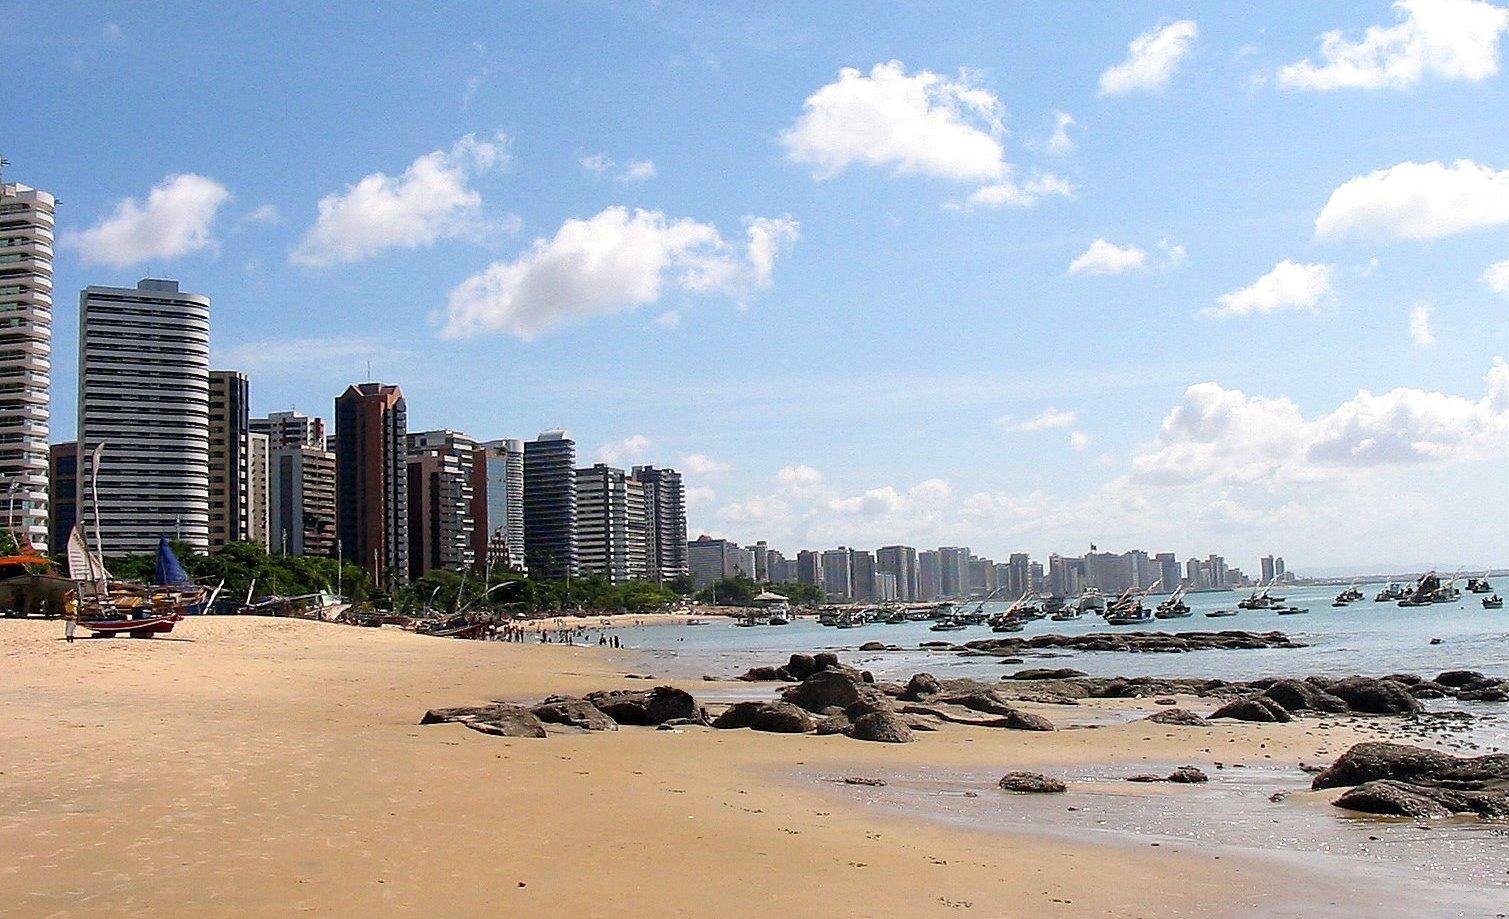 imagem de outra das praias em Fortaleza, a praia do Mucuripe. A imagem mostra a areia, as pedras, a rala vegetação e os prédios na orla da praia.